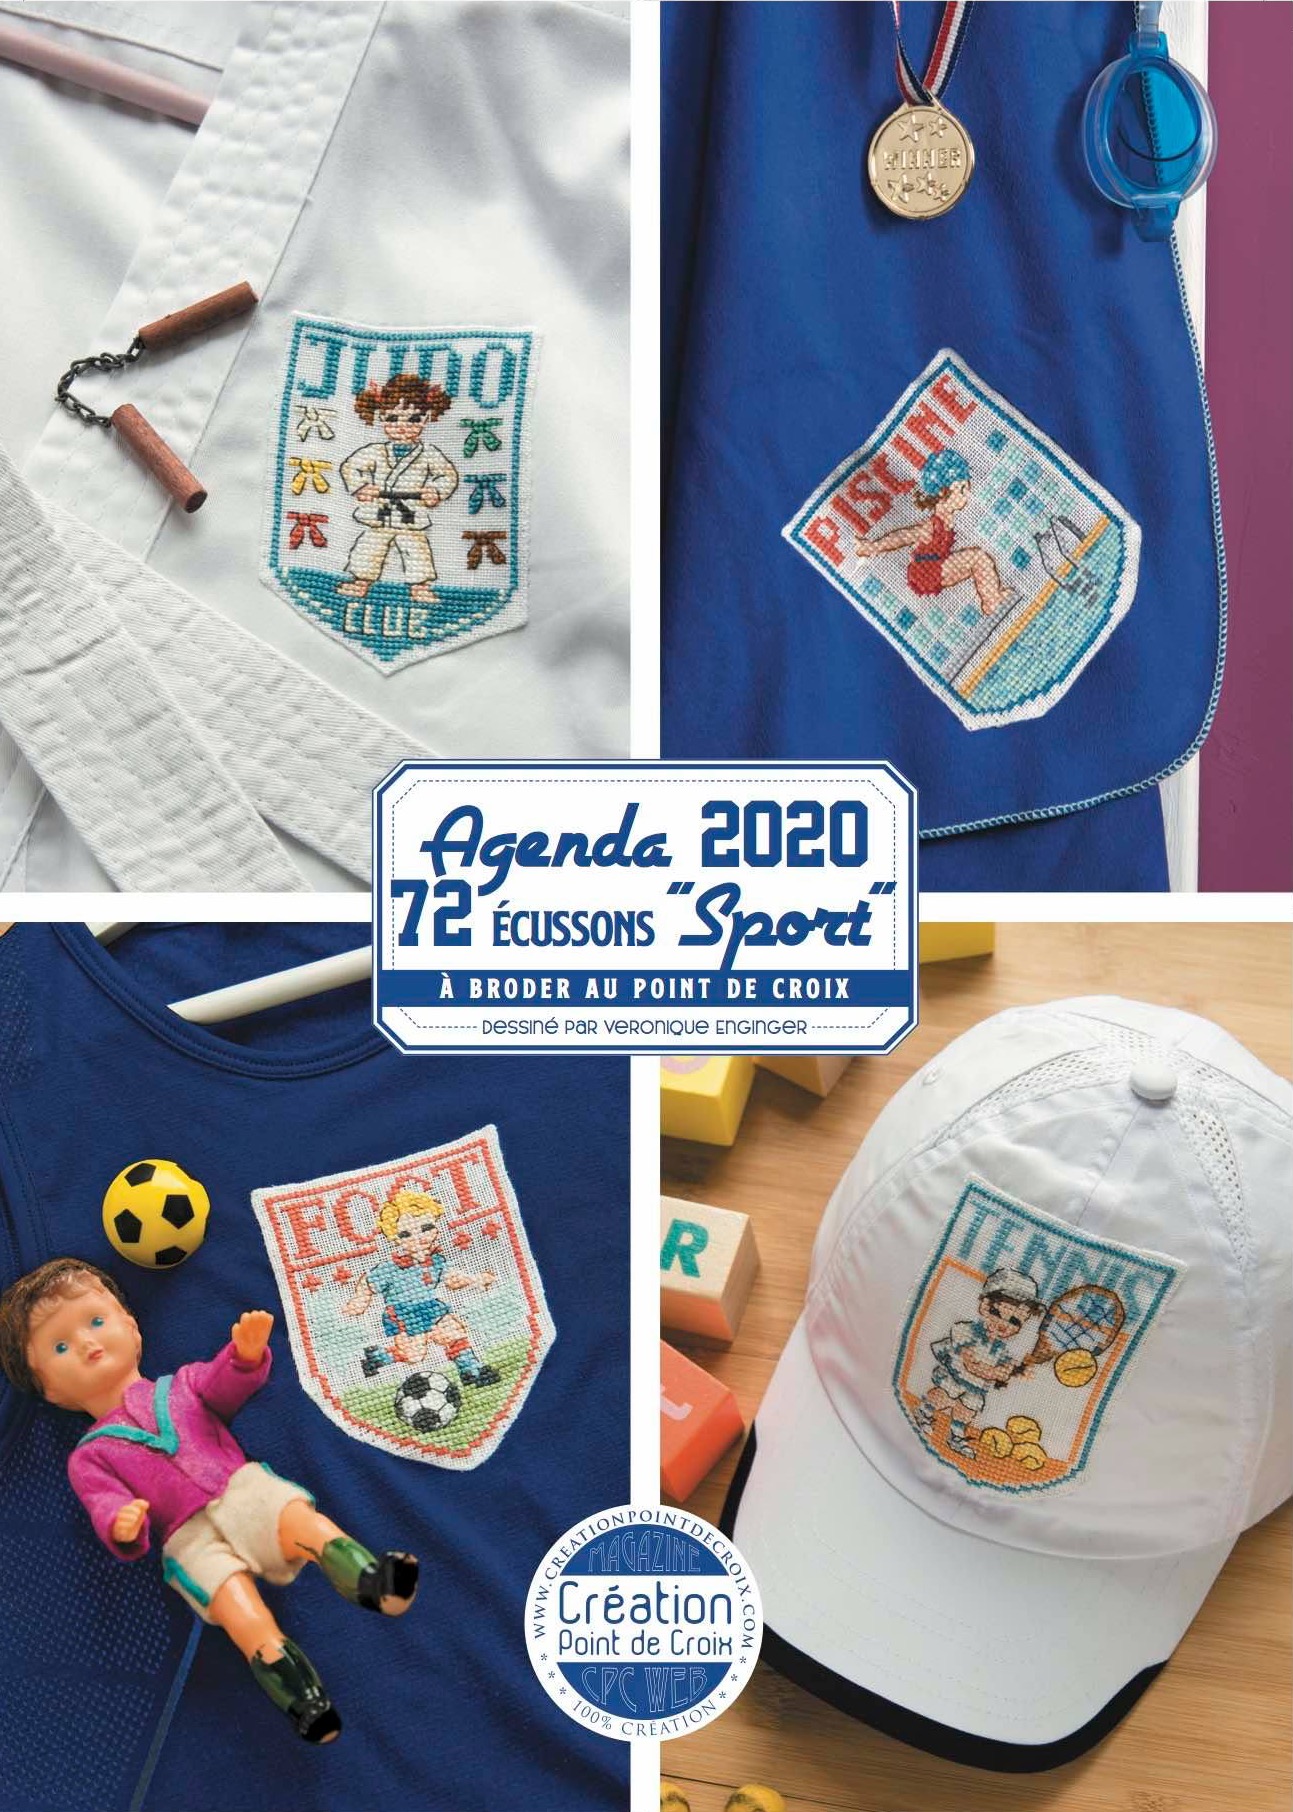 Agenda 2020 Creation Point de Croix. Sport